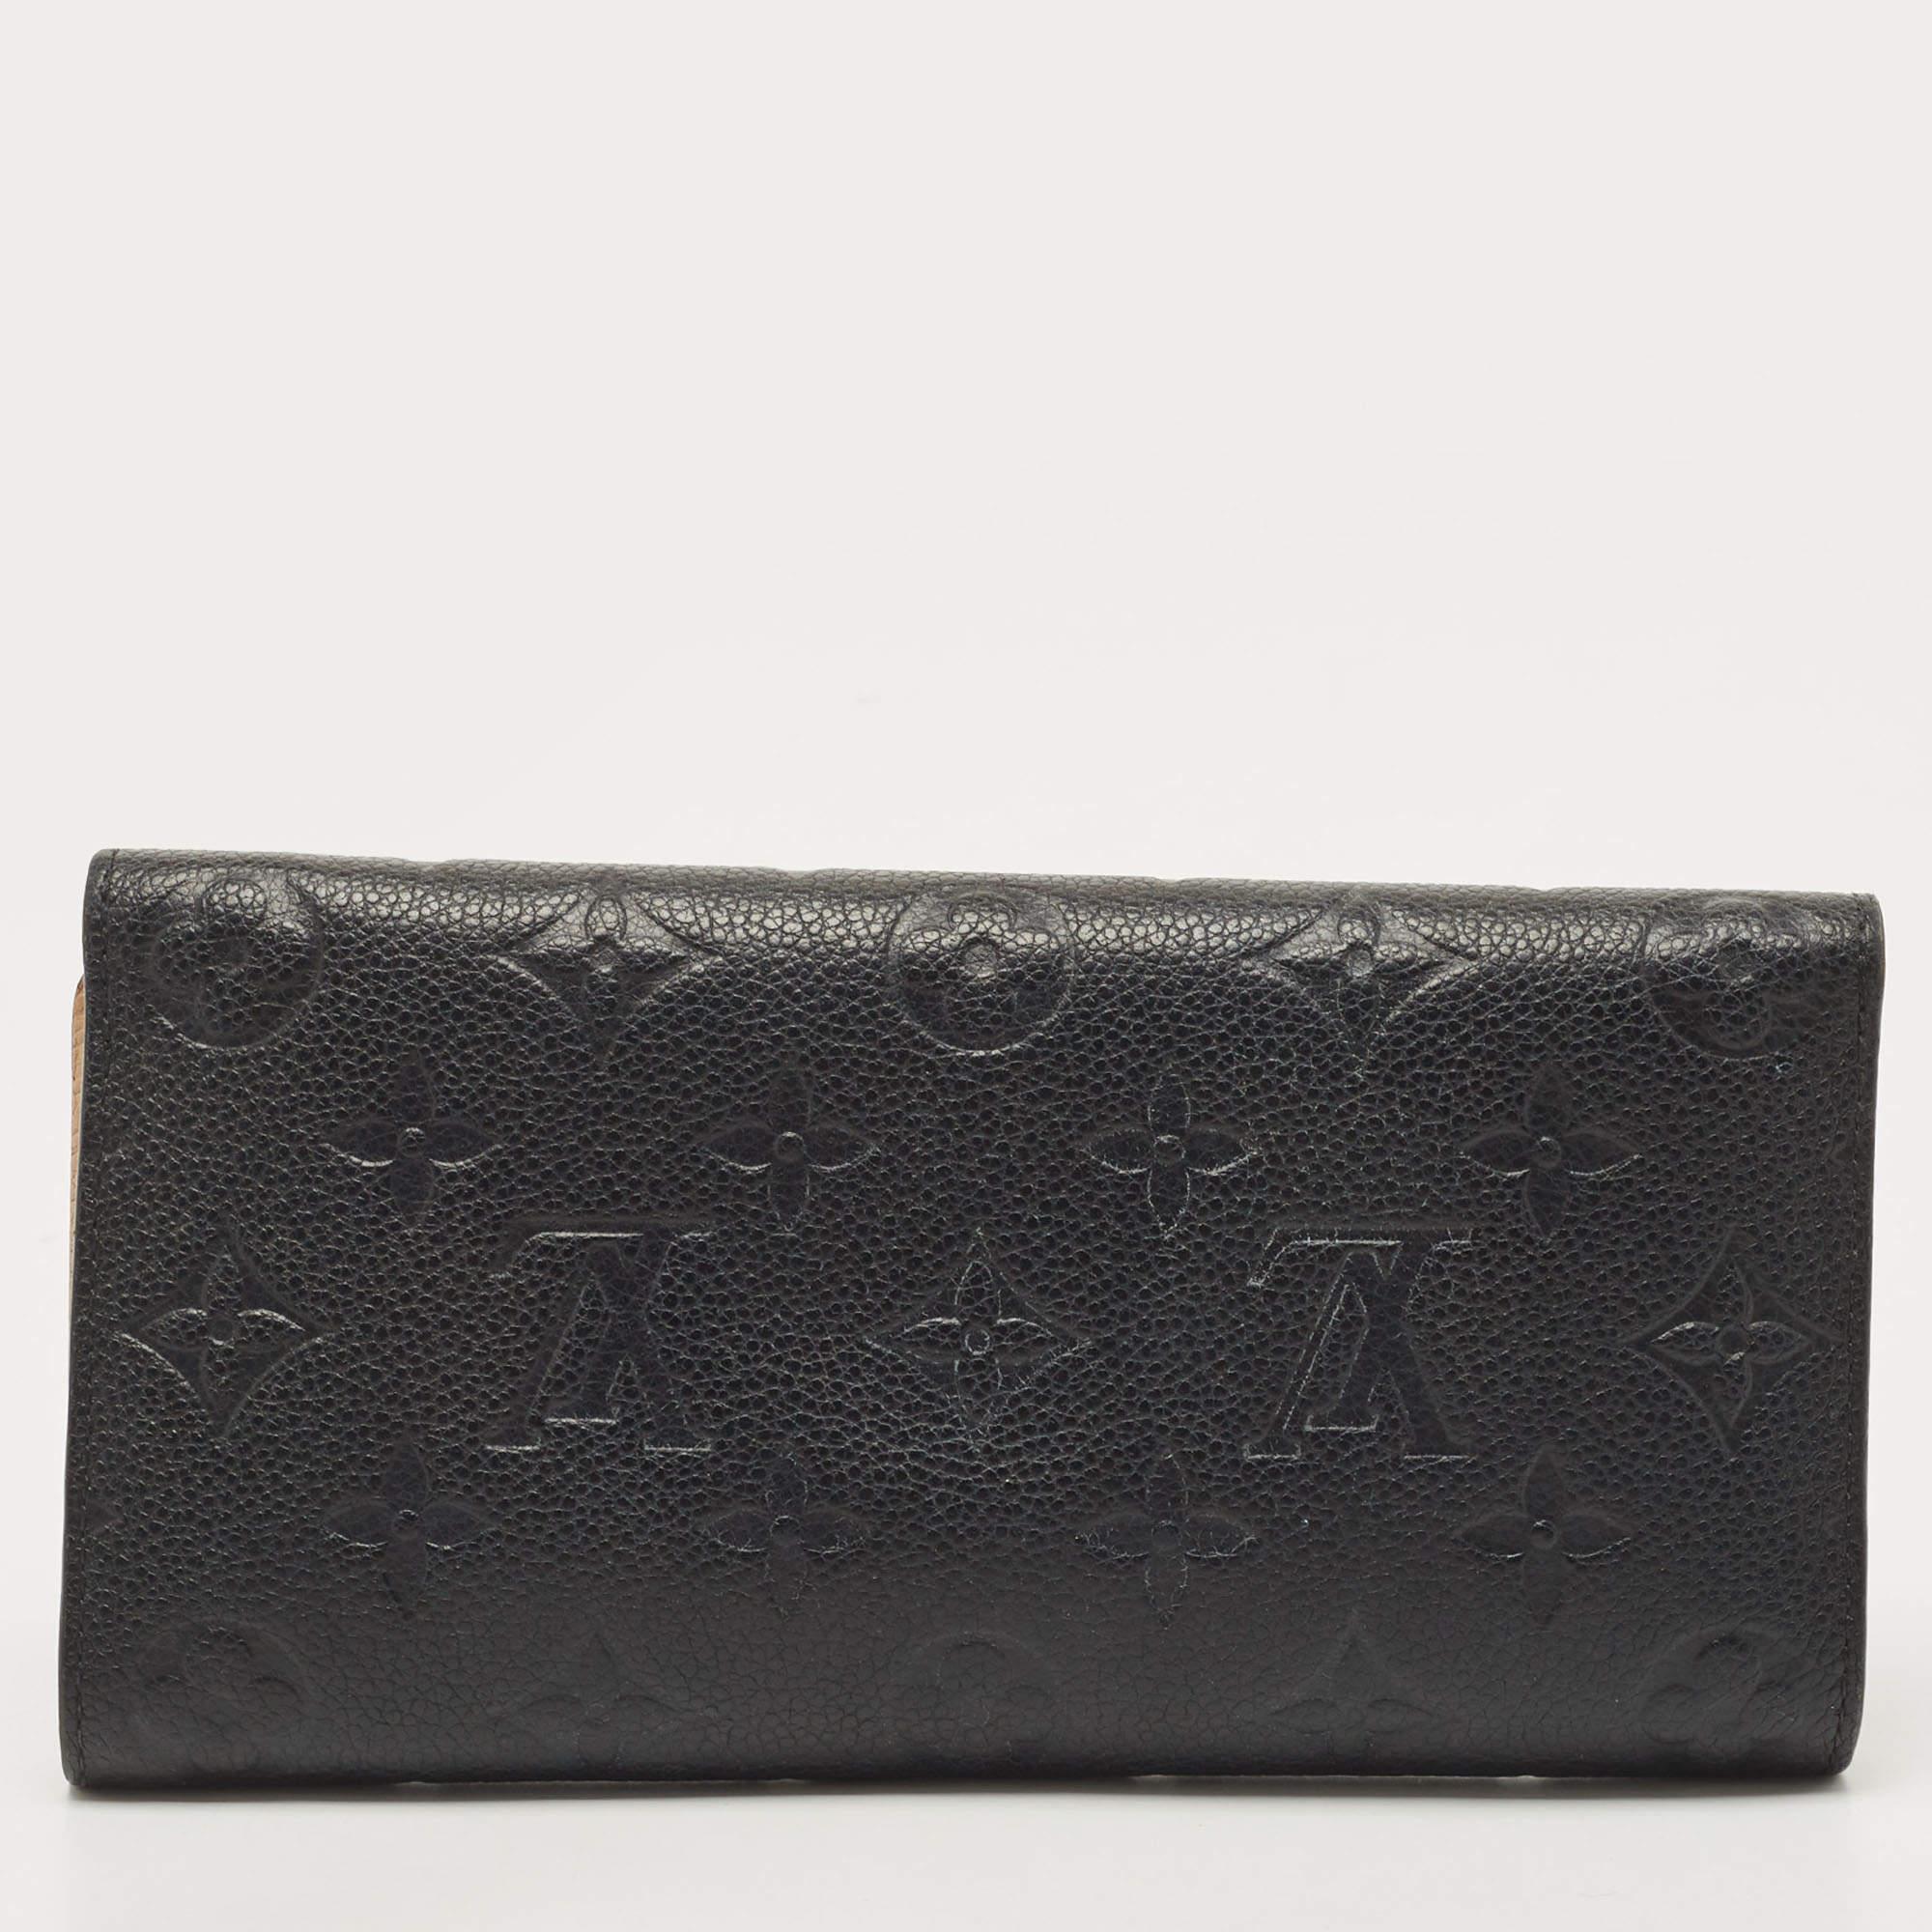 Louis Vuitton Black Empreinte Leather Josephine Wallet For Sale 6